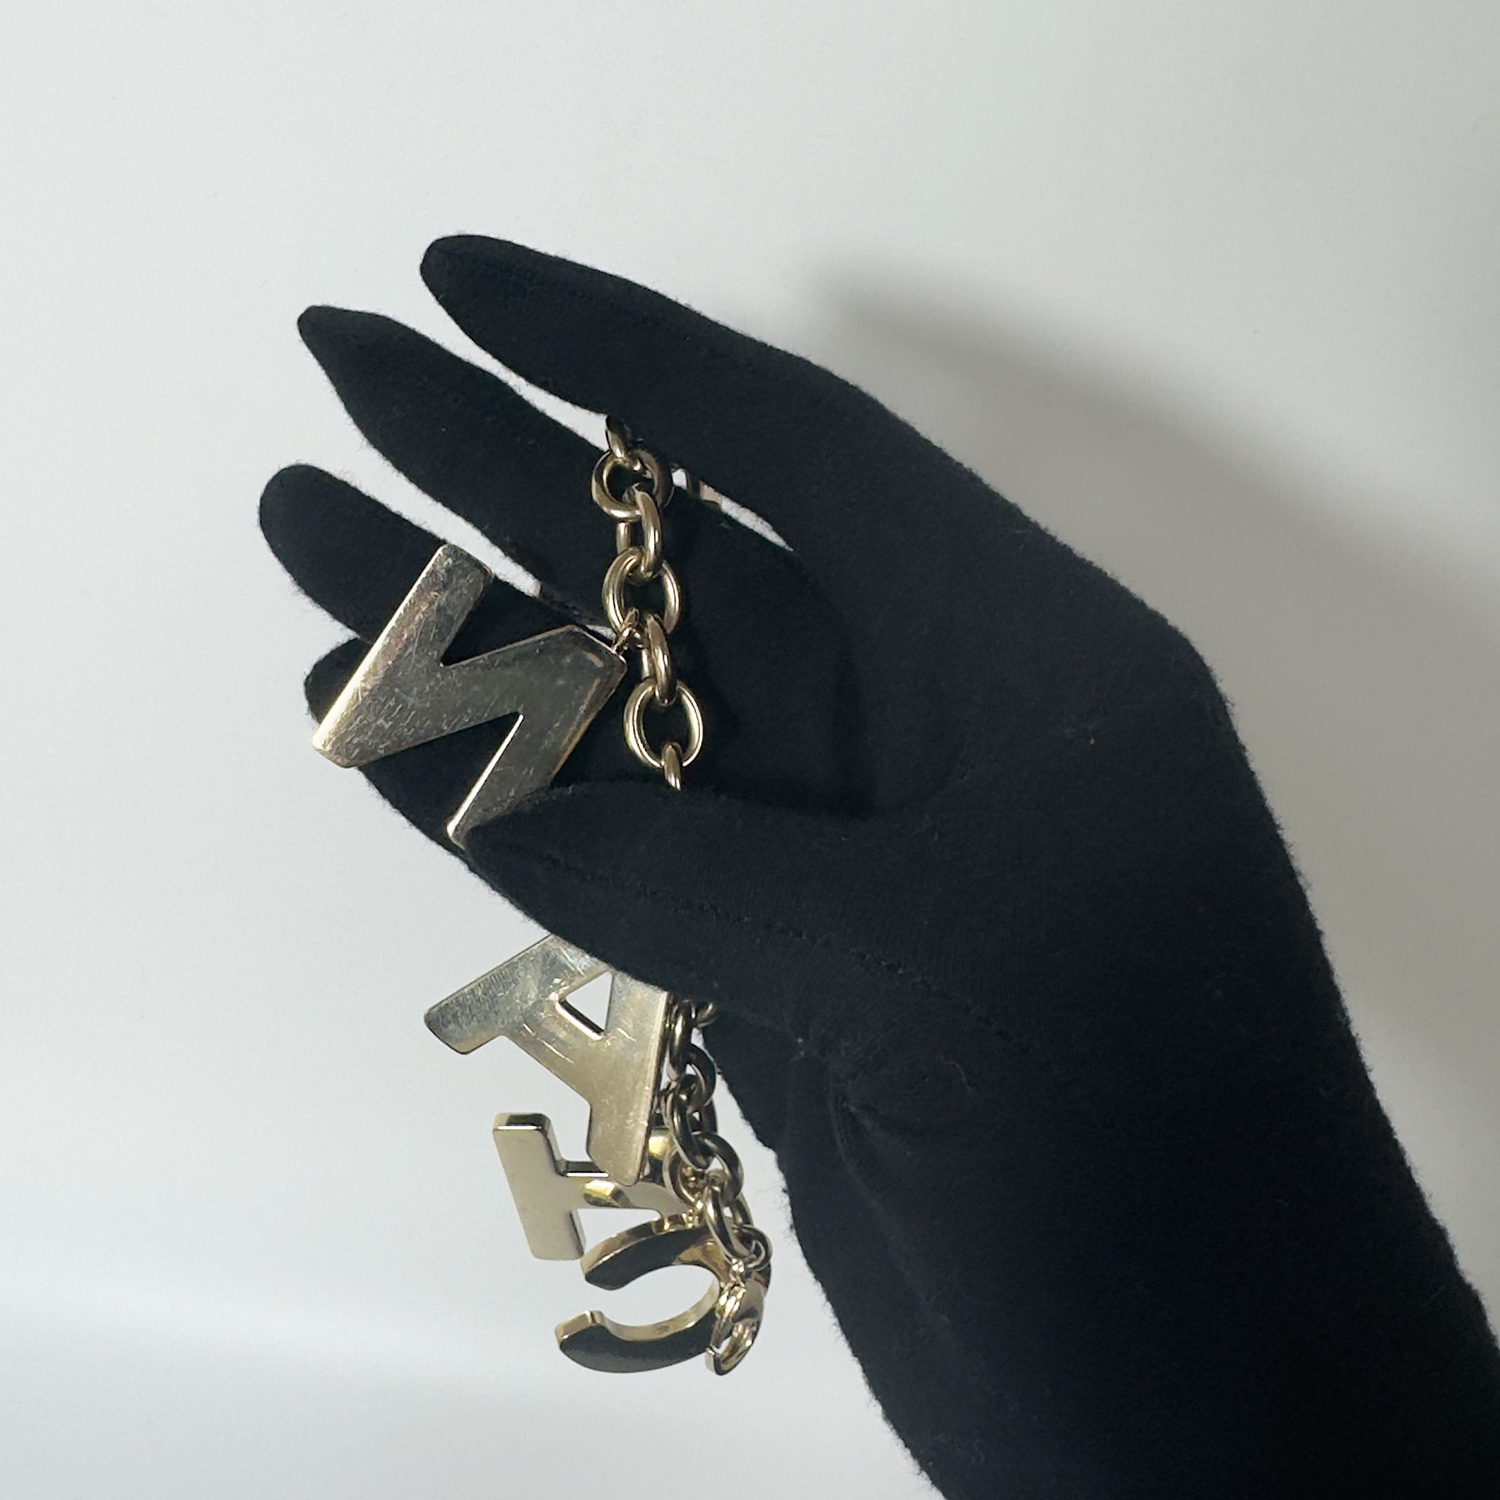 Van Cleef & Arpels 2019 wishlist | Vintage chanel bag, Bracelet stack,  Signature bracelet